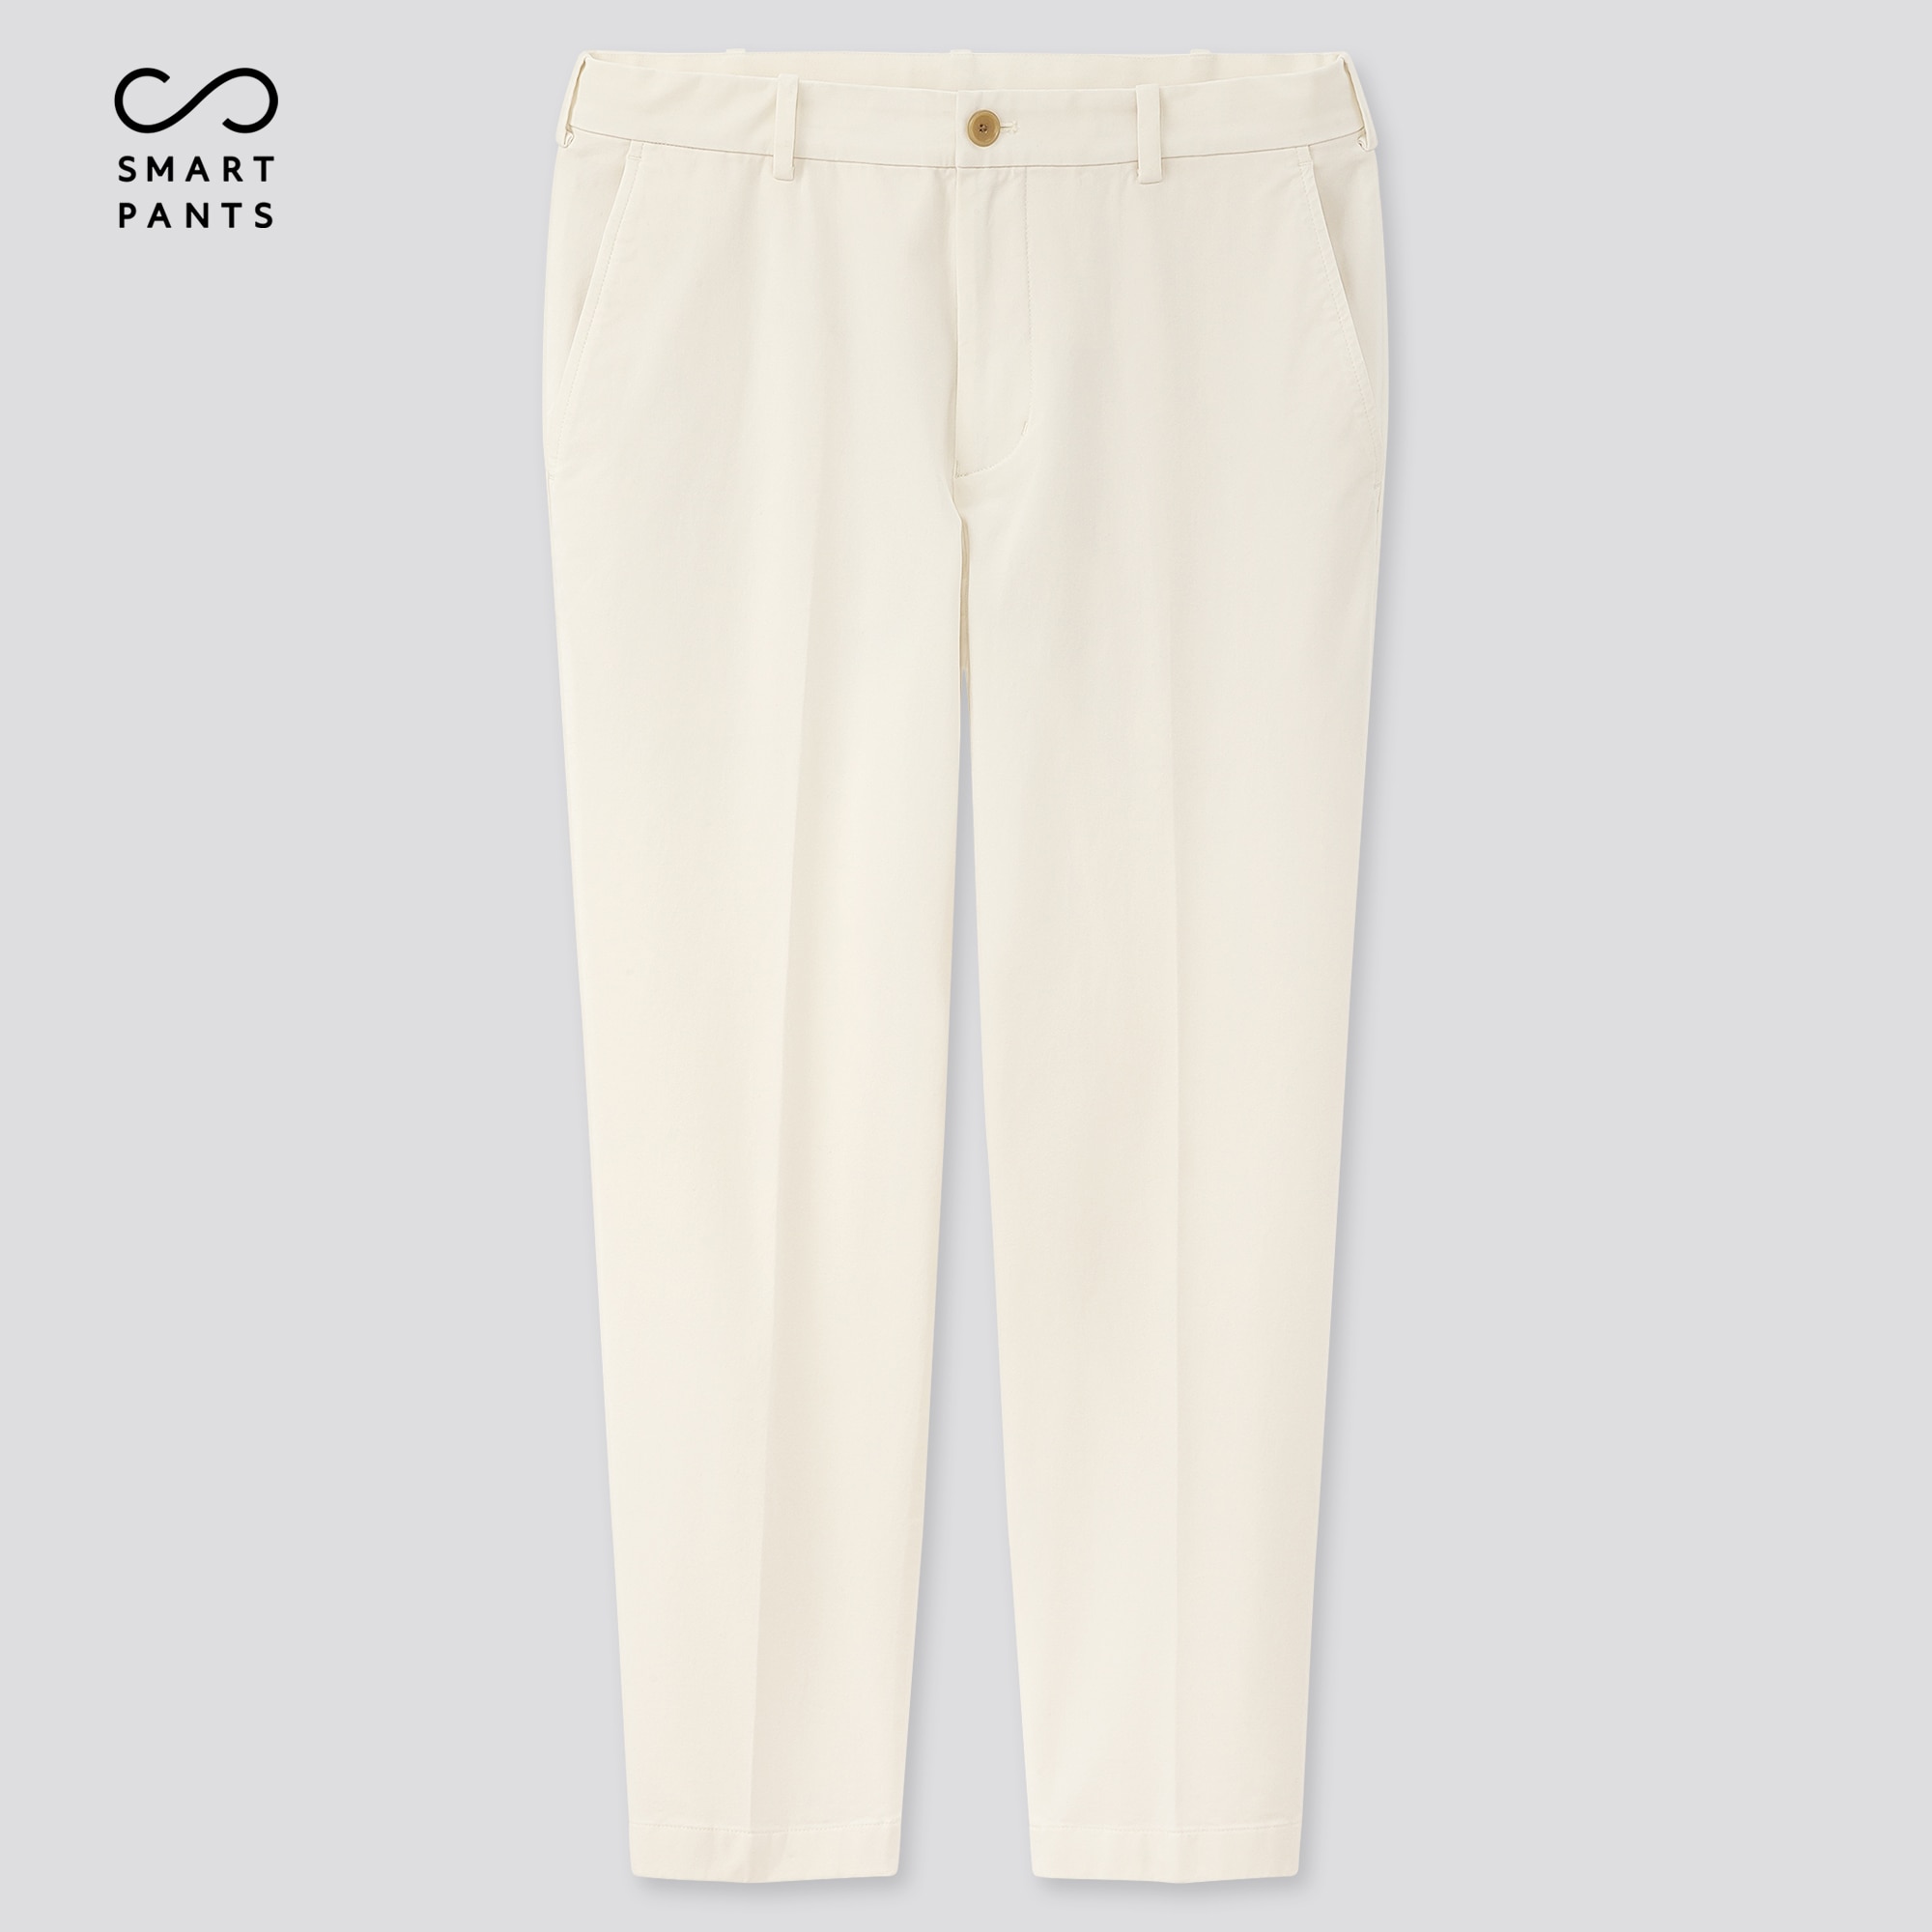 cotton pants online